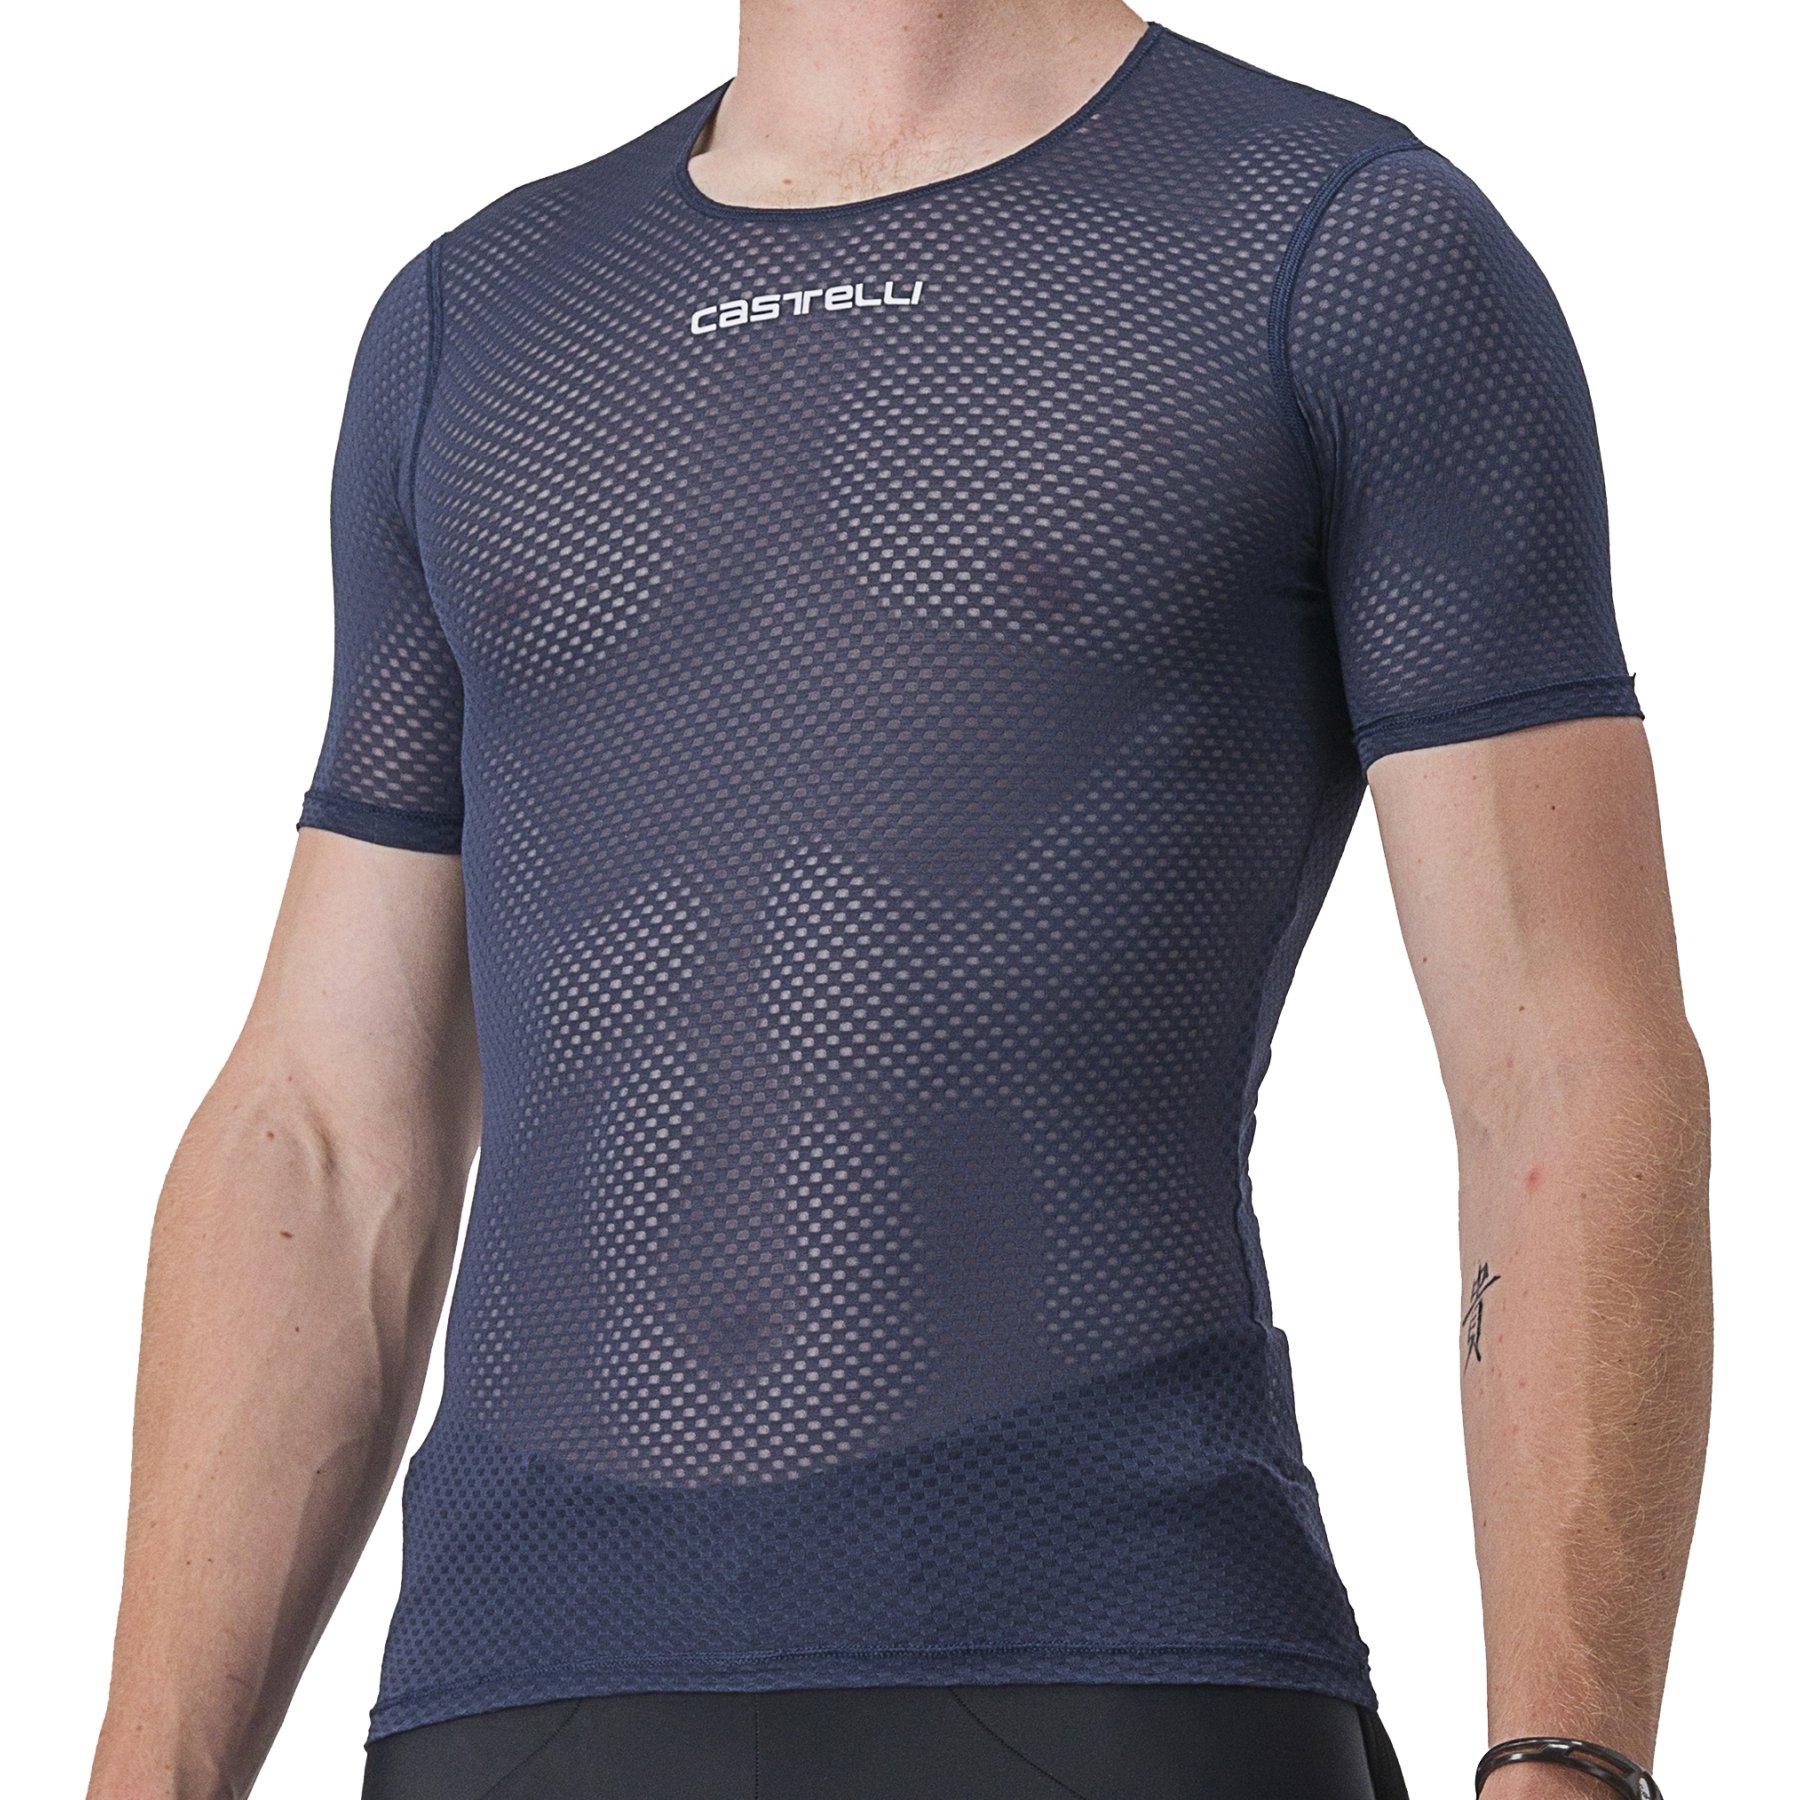 Produktbild von Castelli Pro Mesh 2.0 Unterhemd Kurzarm Herren - belgian blue 424